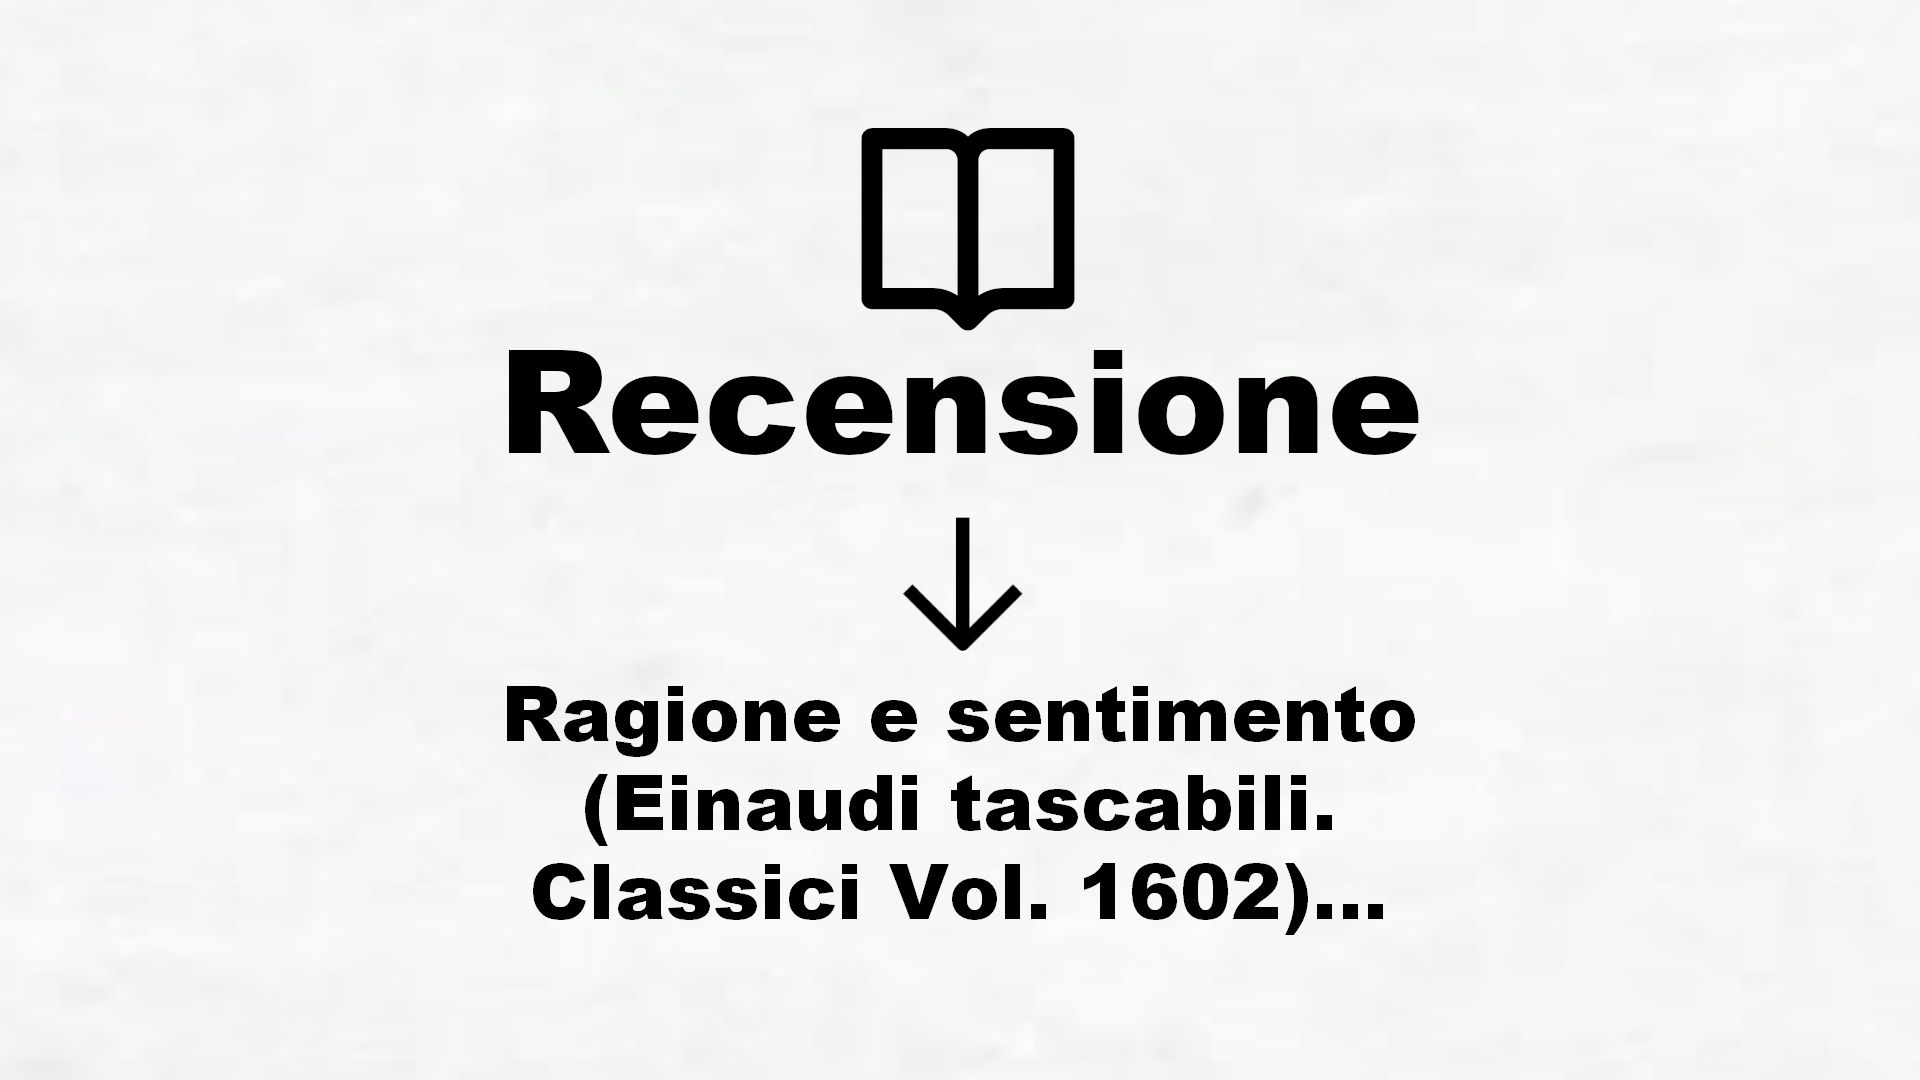 Ragione e sentimento (Einaudi tascabili. Classici Vol. 1602) – Recensione Libro